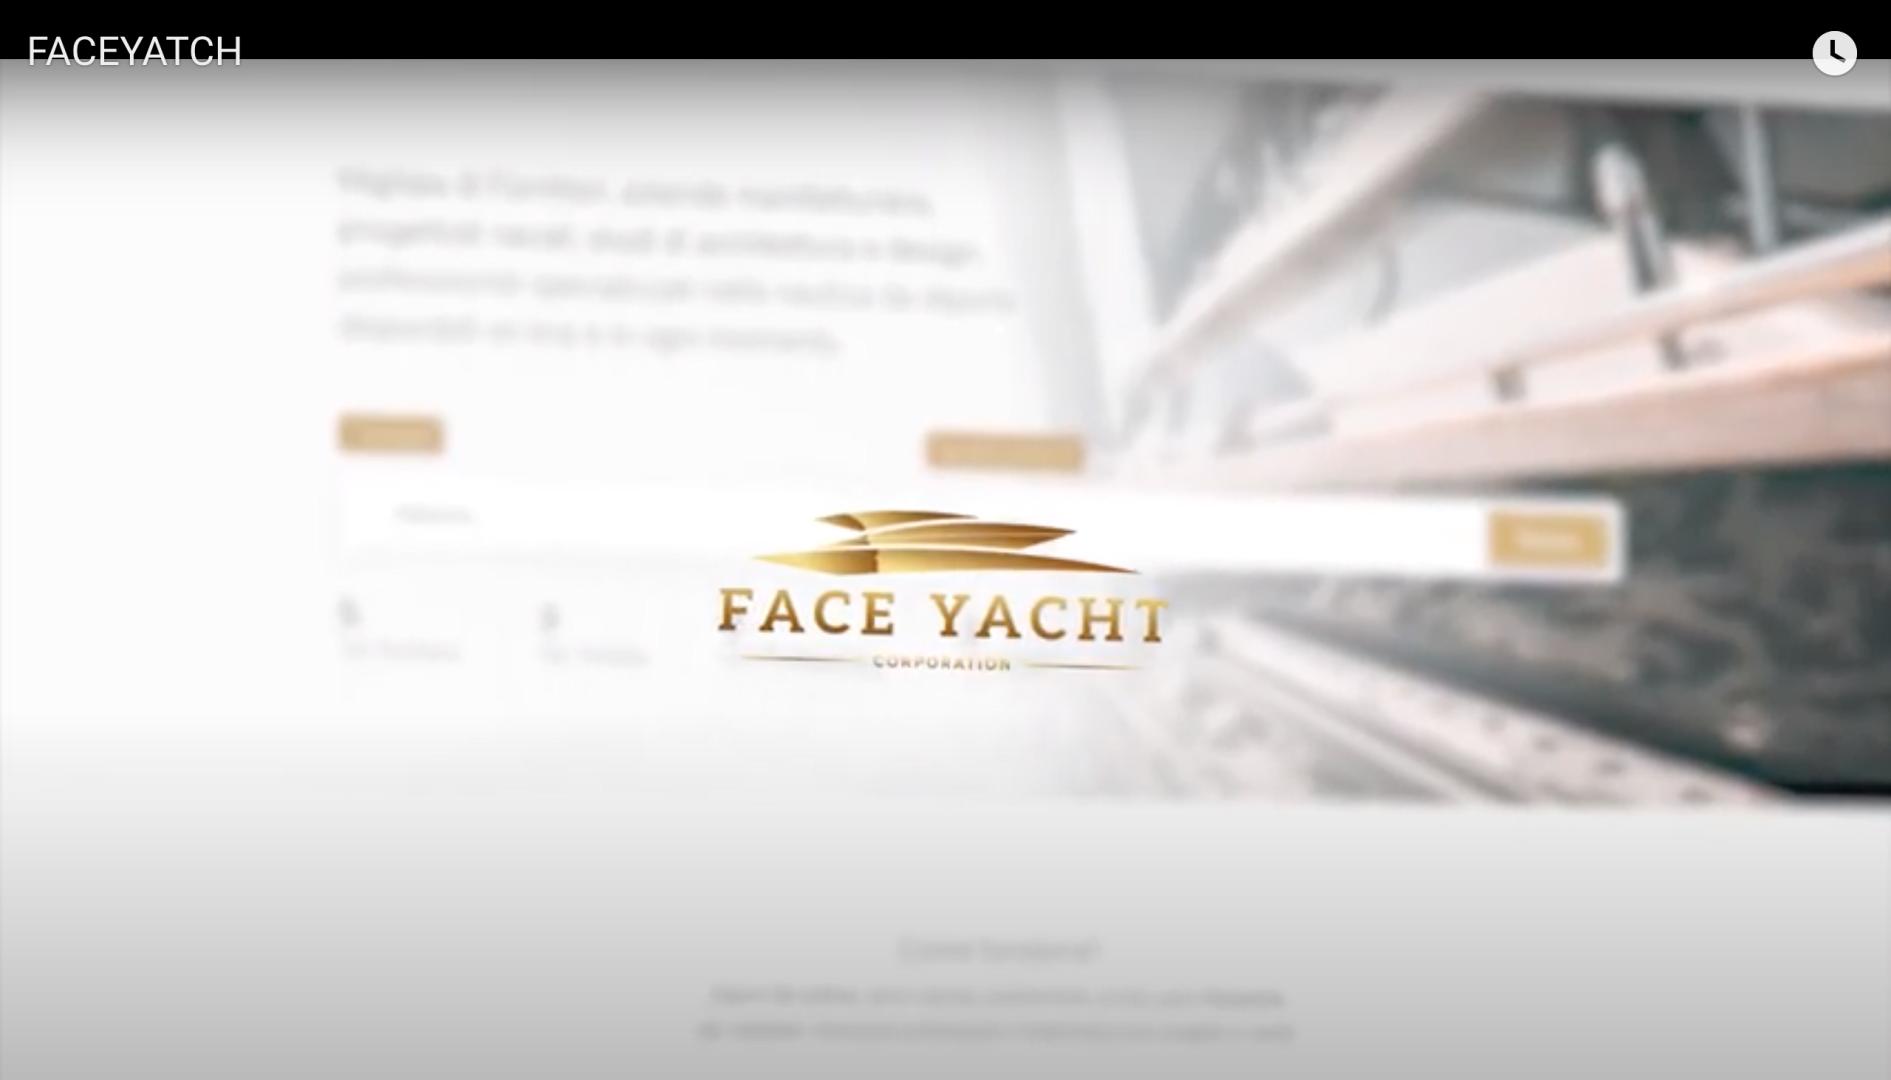 Face Yacht, on line il social network dedicato ai professionisti della nautica